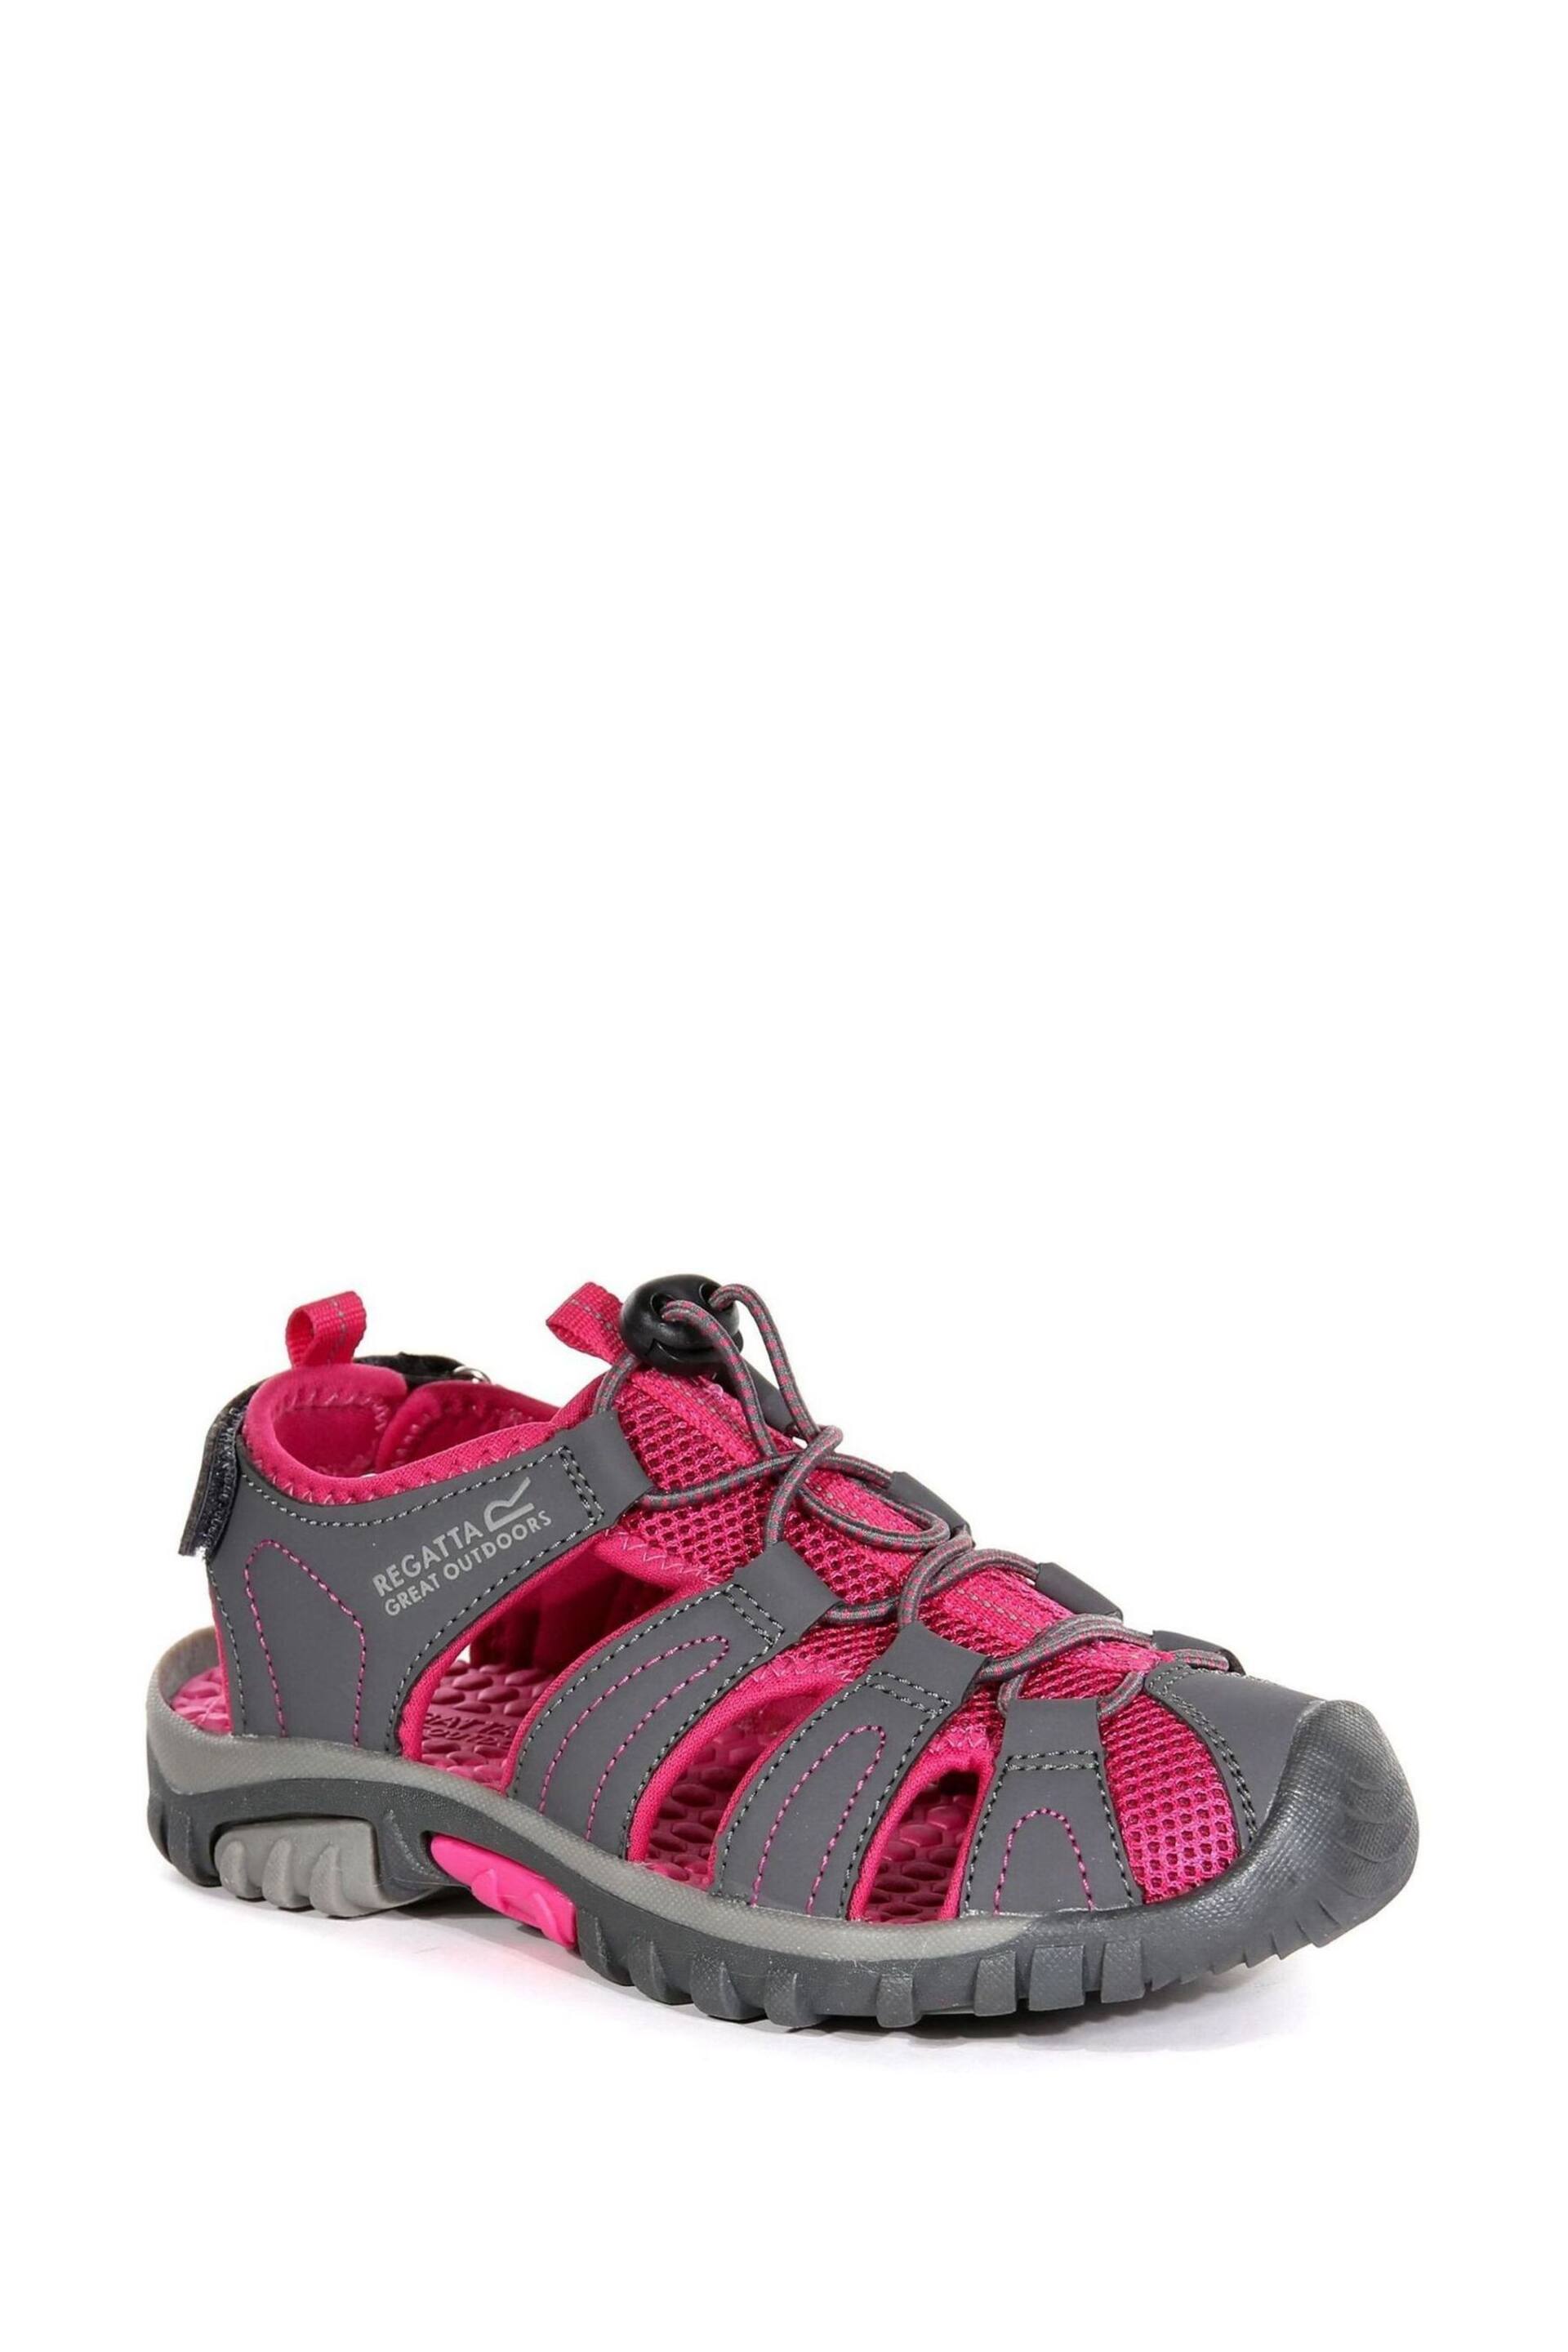 Regatta Grey Junior Westshore Sandals - Image 3 of 6